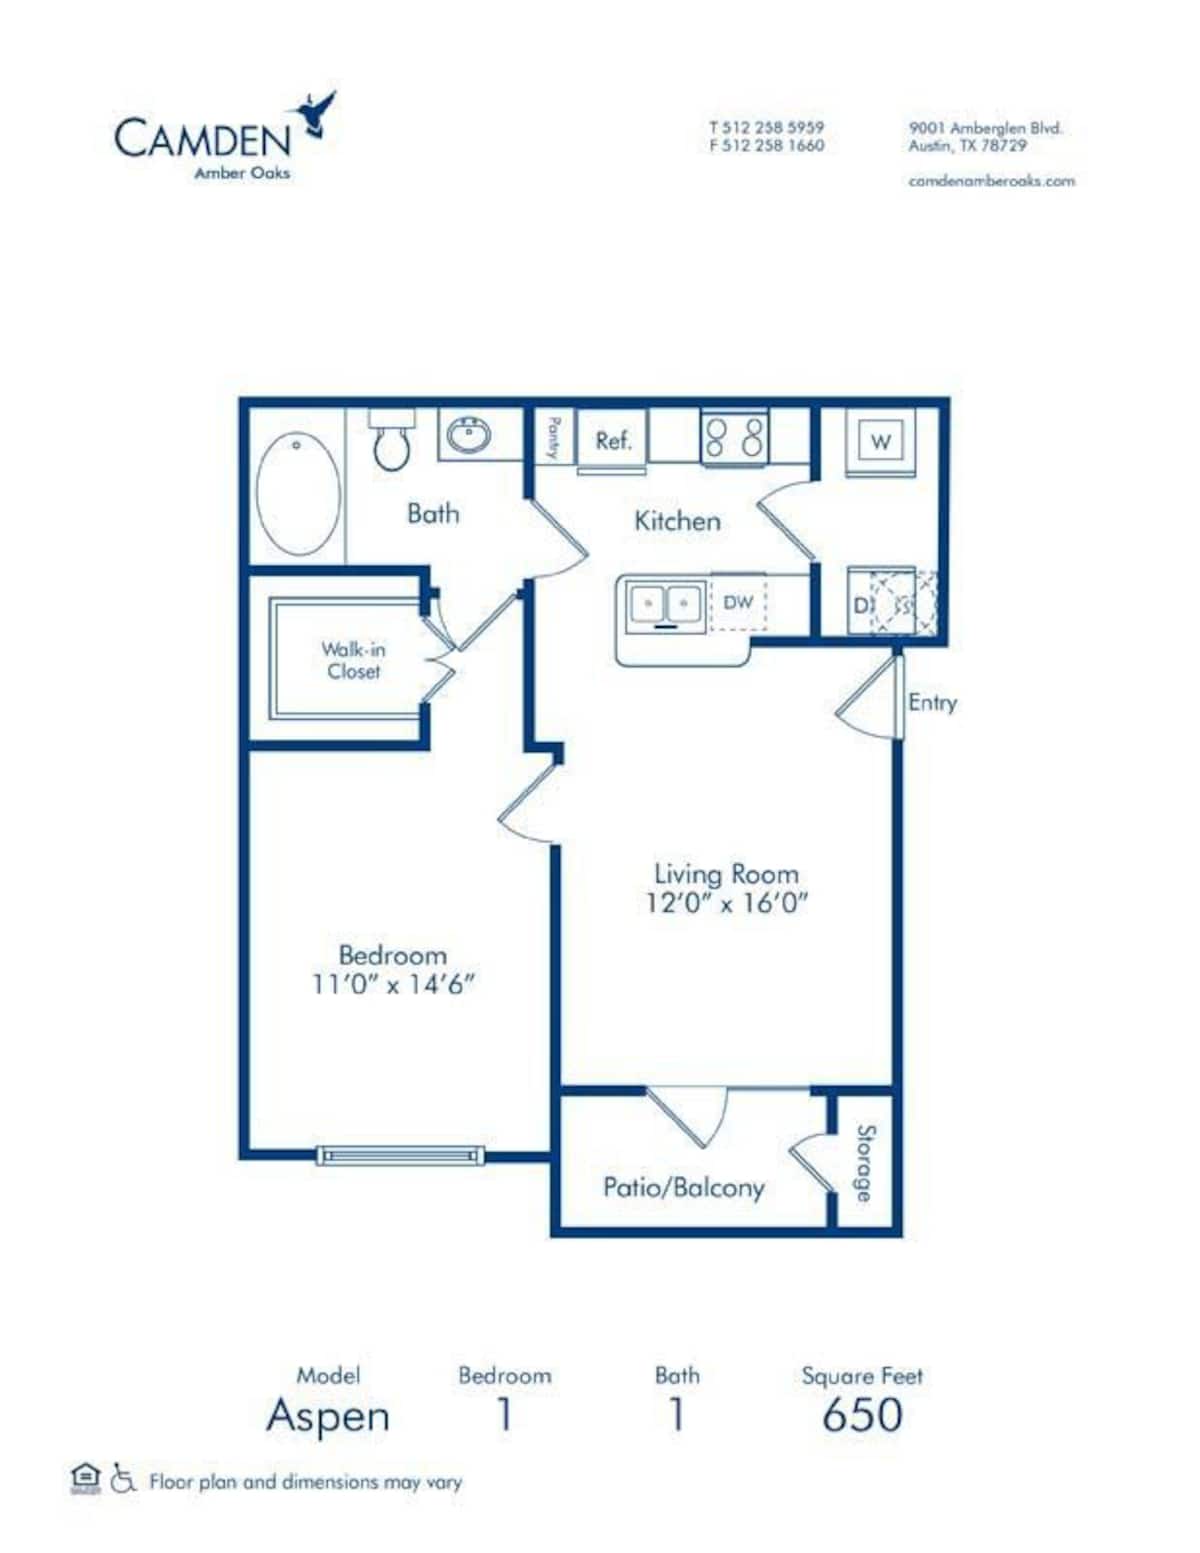 Floorplan diagram for Aspen, showing 1 bedroom